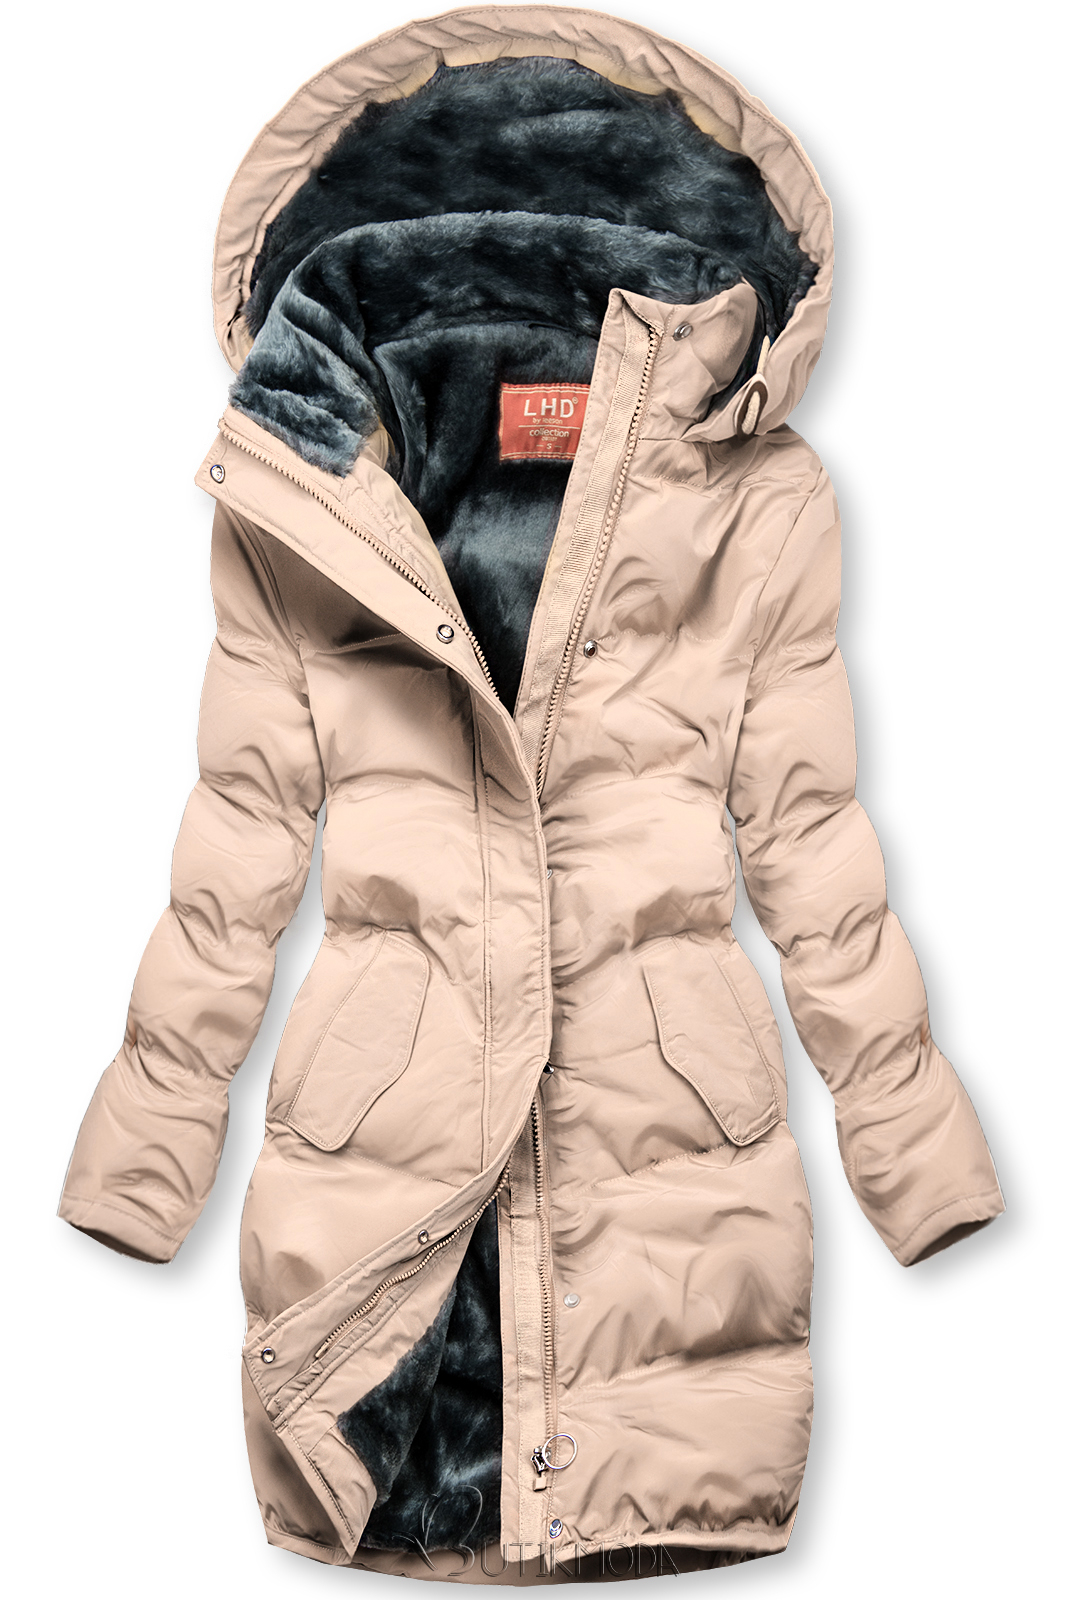 Púderszínű téli kabát plüss béléssel